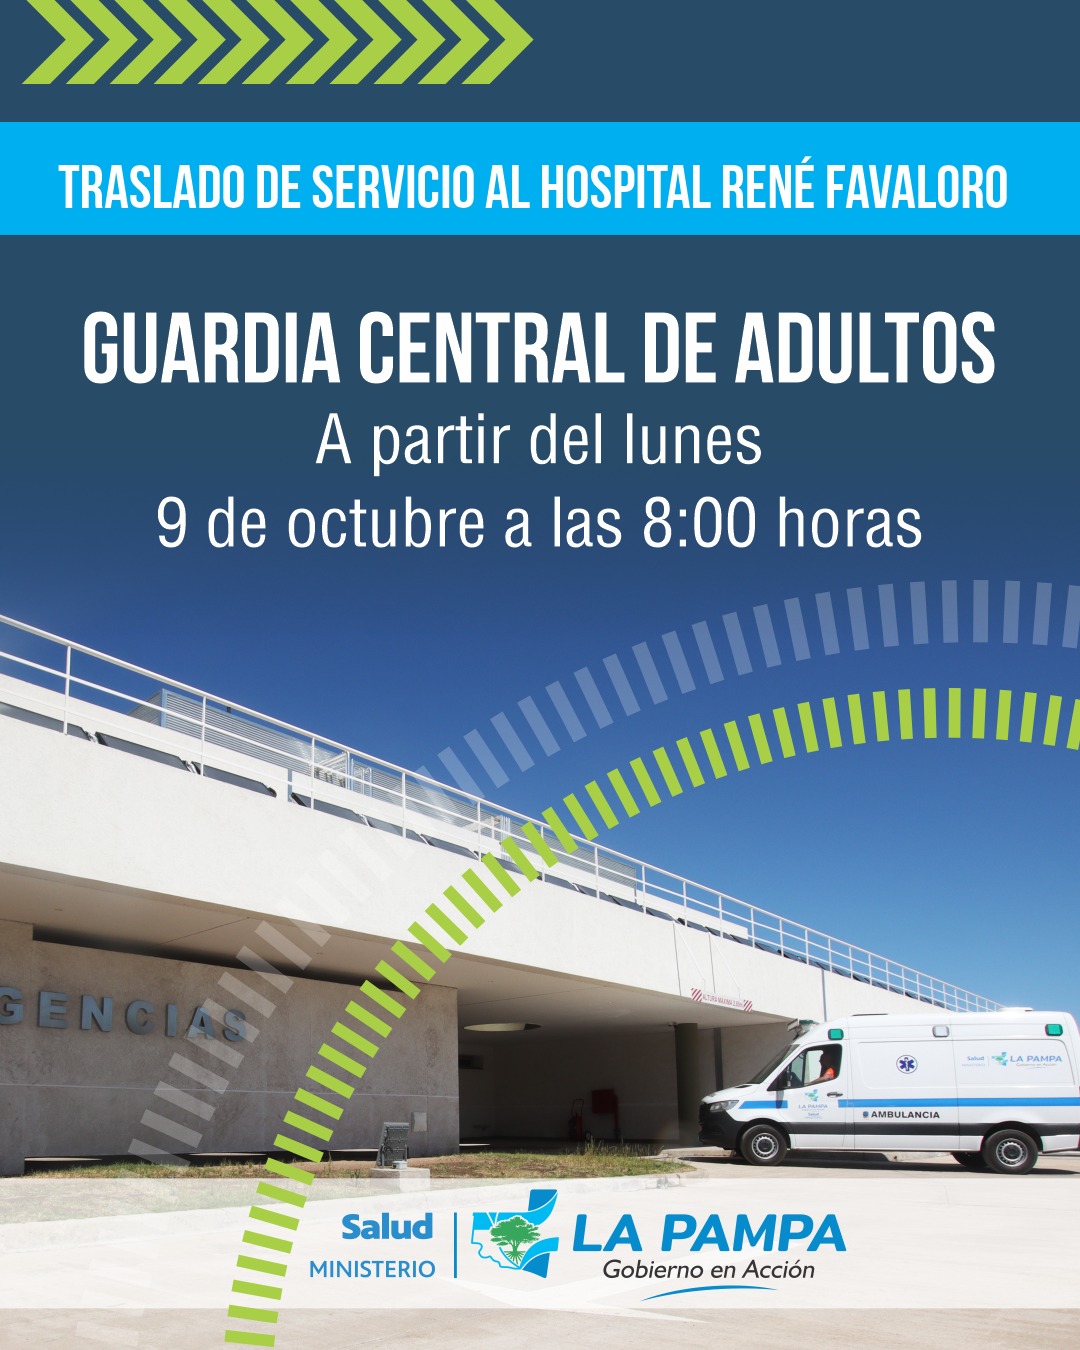 Desde el lunes, guardia central de adultos atenderá en el Hospital Favaloro 